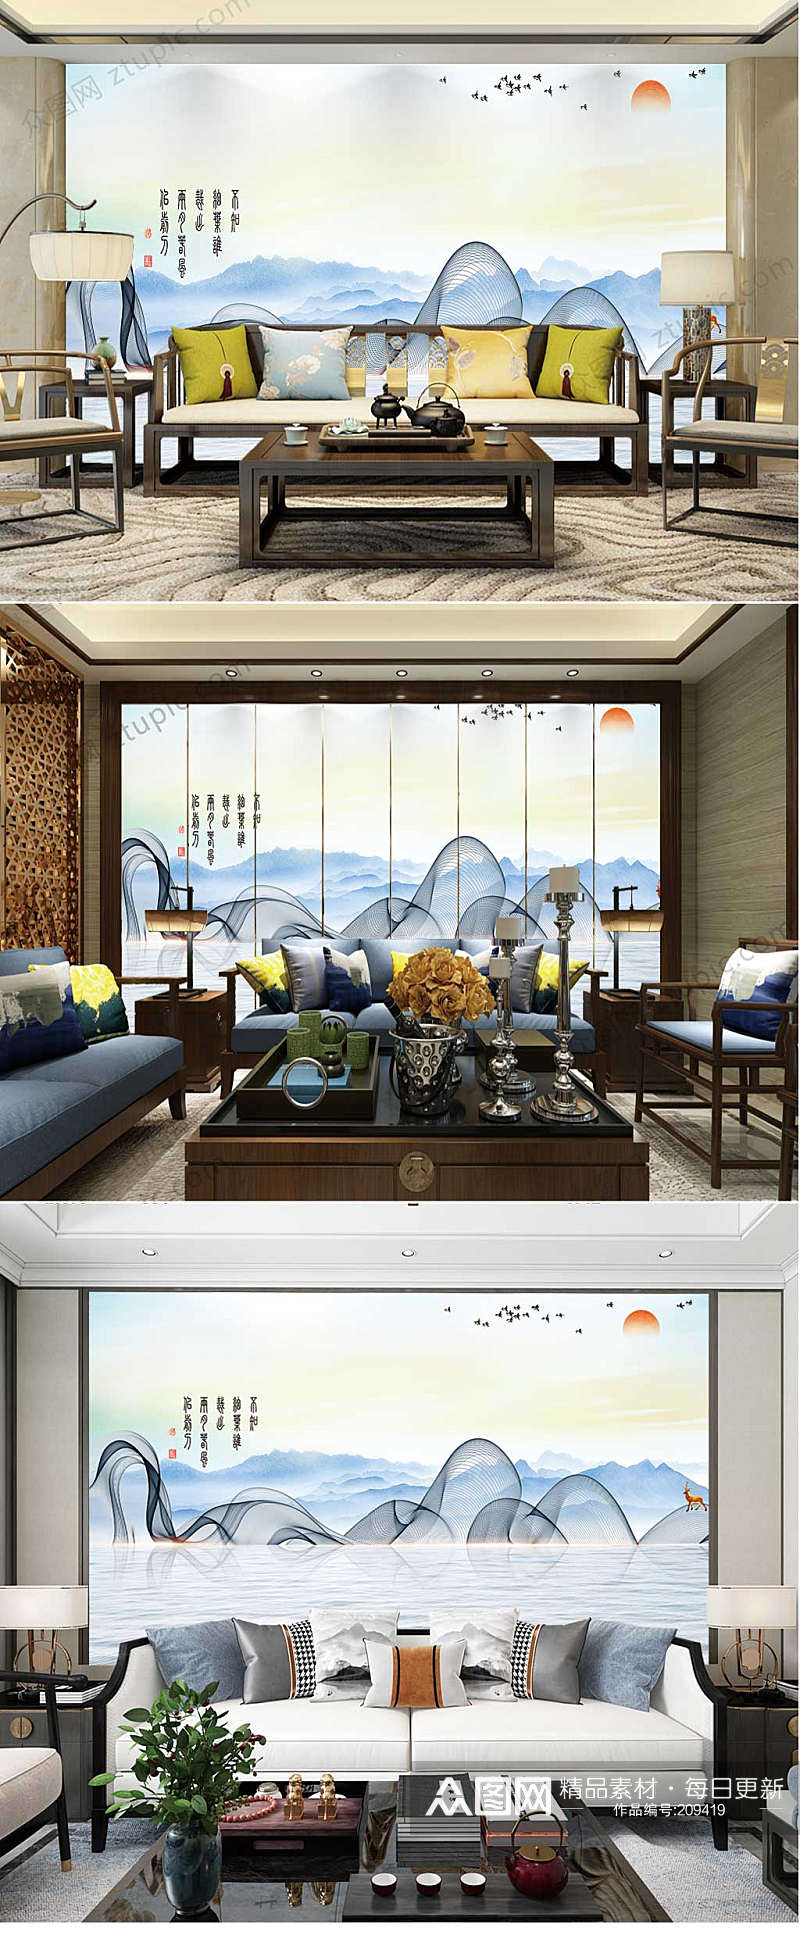 中国风风景客厅背景墙素材